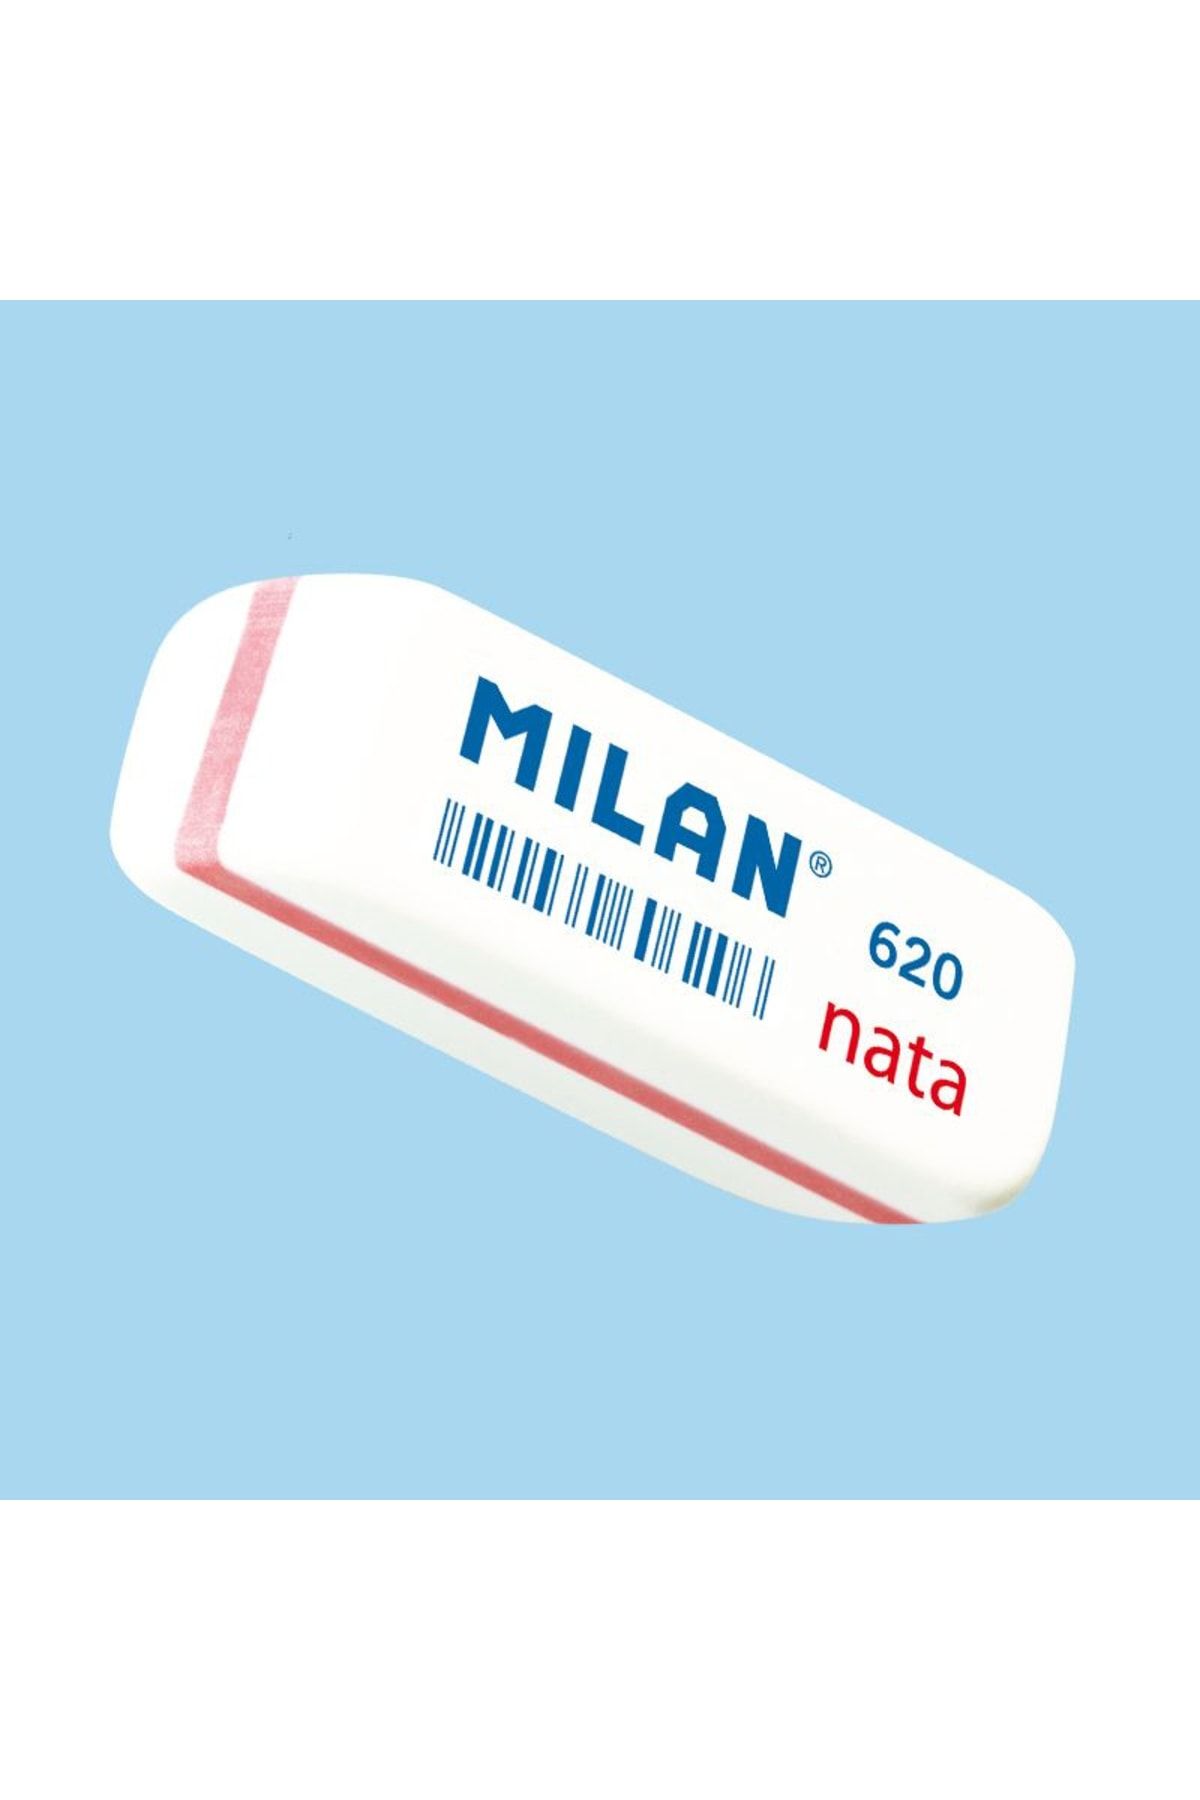 Milan Cpm620 Nata® Yumuşak Plastik Silgi - 20adet